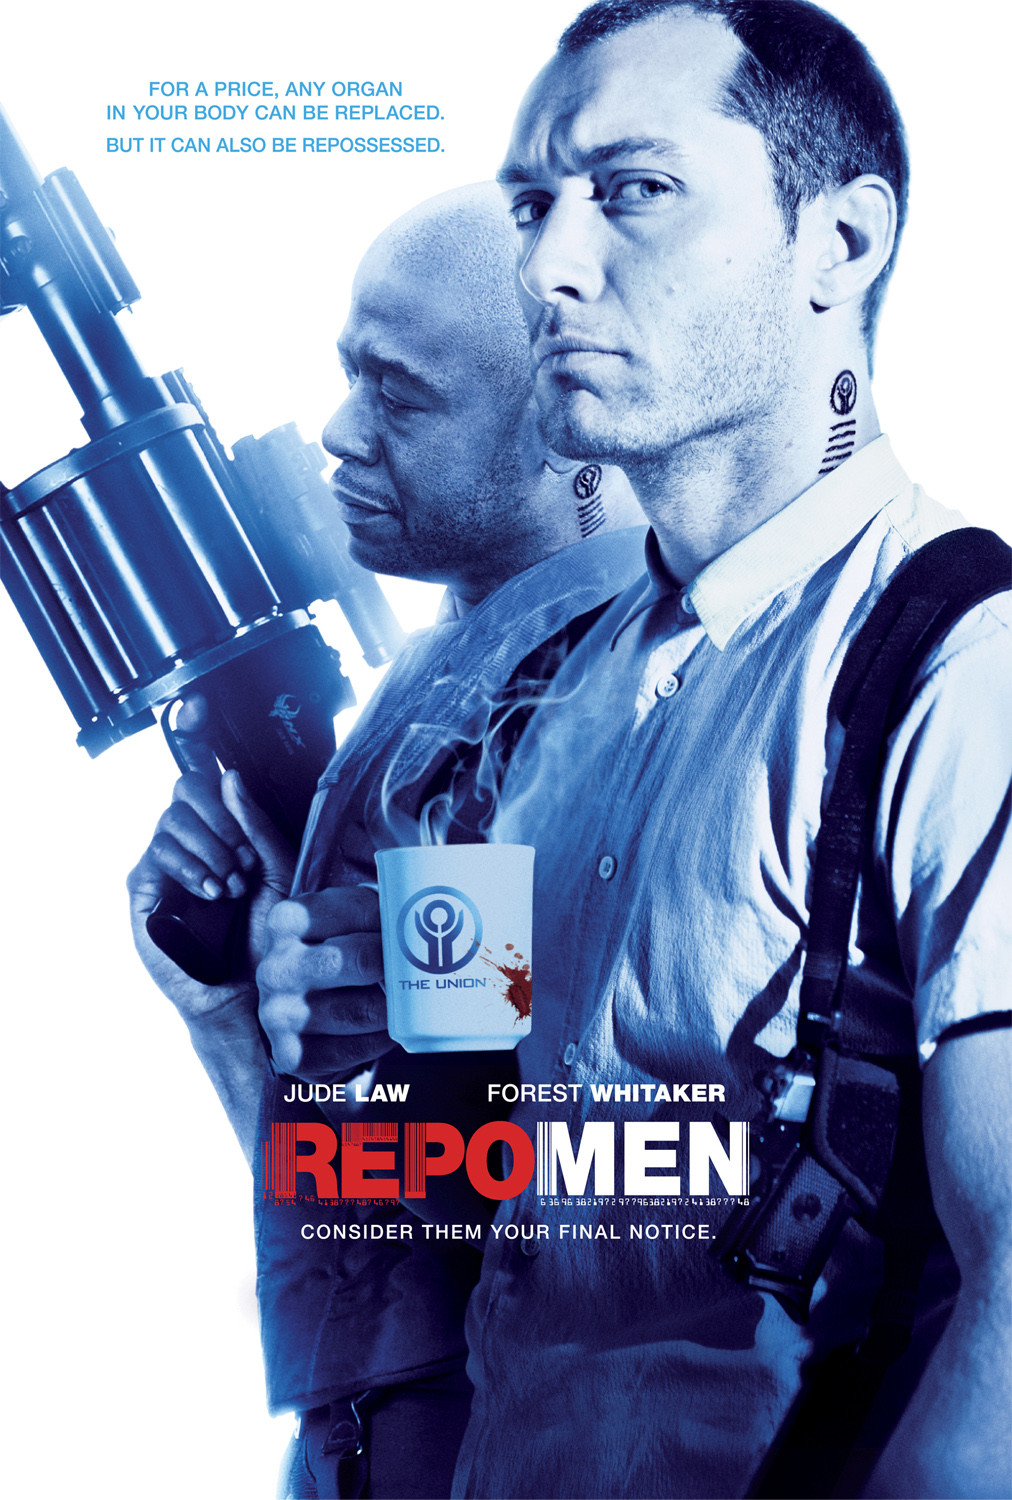 [重生男人/重生曼波/回收人/追讨人 欧版原盘中字 未分级版] Repo Men UNRATED 2010 Blu-ray EUR 1080p AVC DTS HDMA5 1 [36.39 GB]-1.jpg